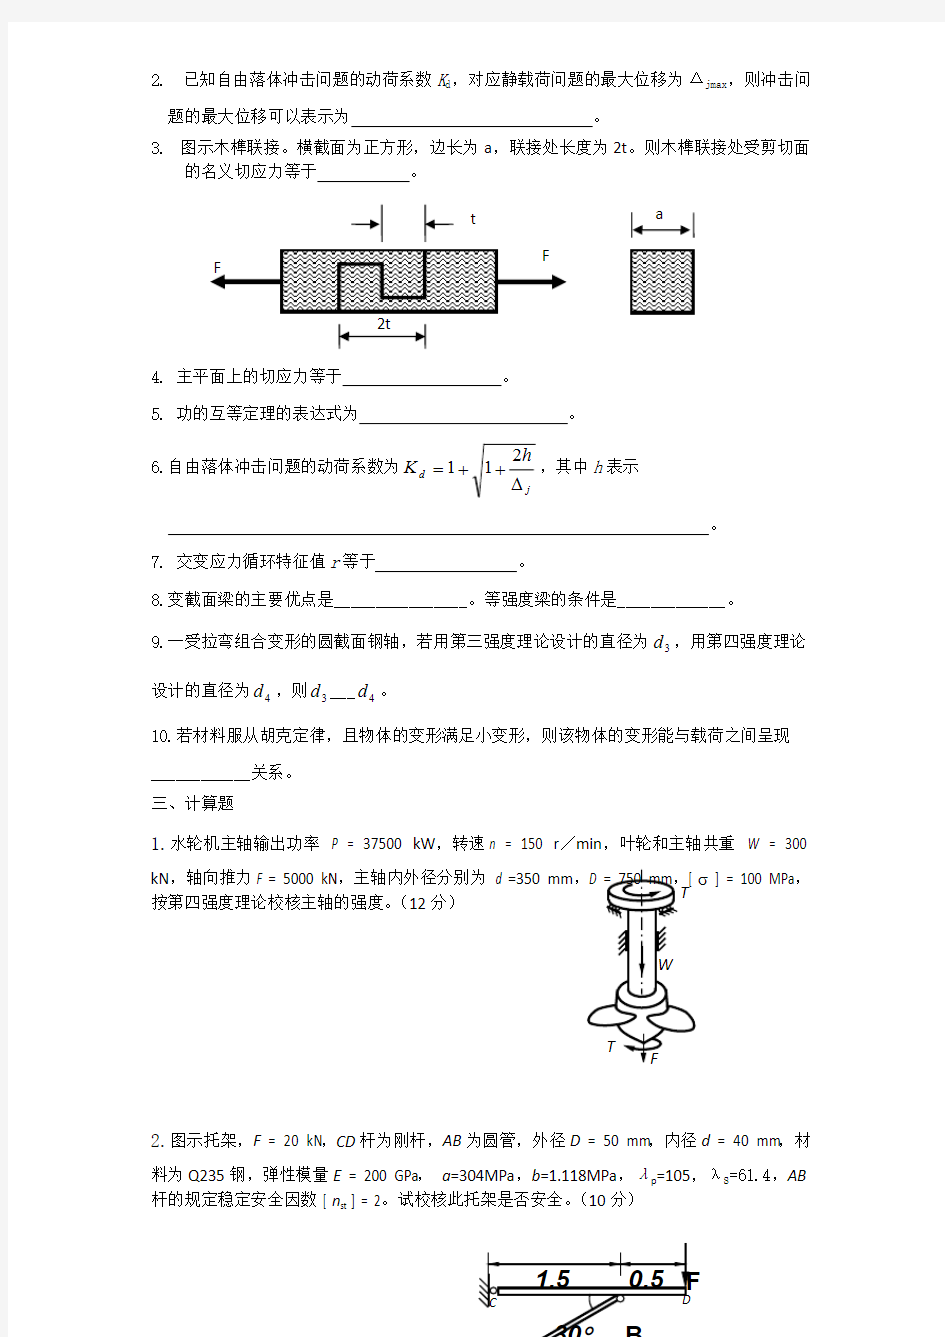 (完整版)郑州大学材料力学试题及答案(1)